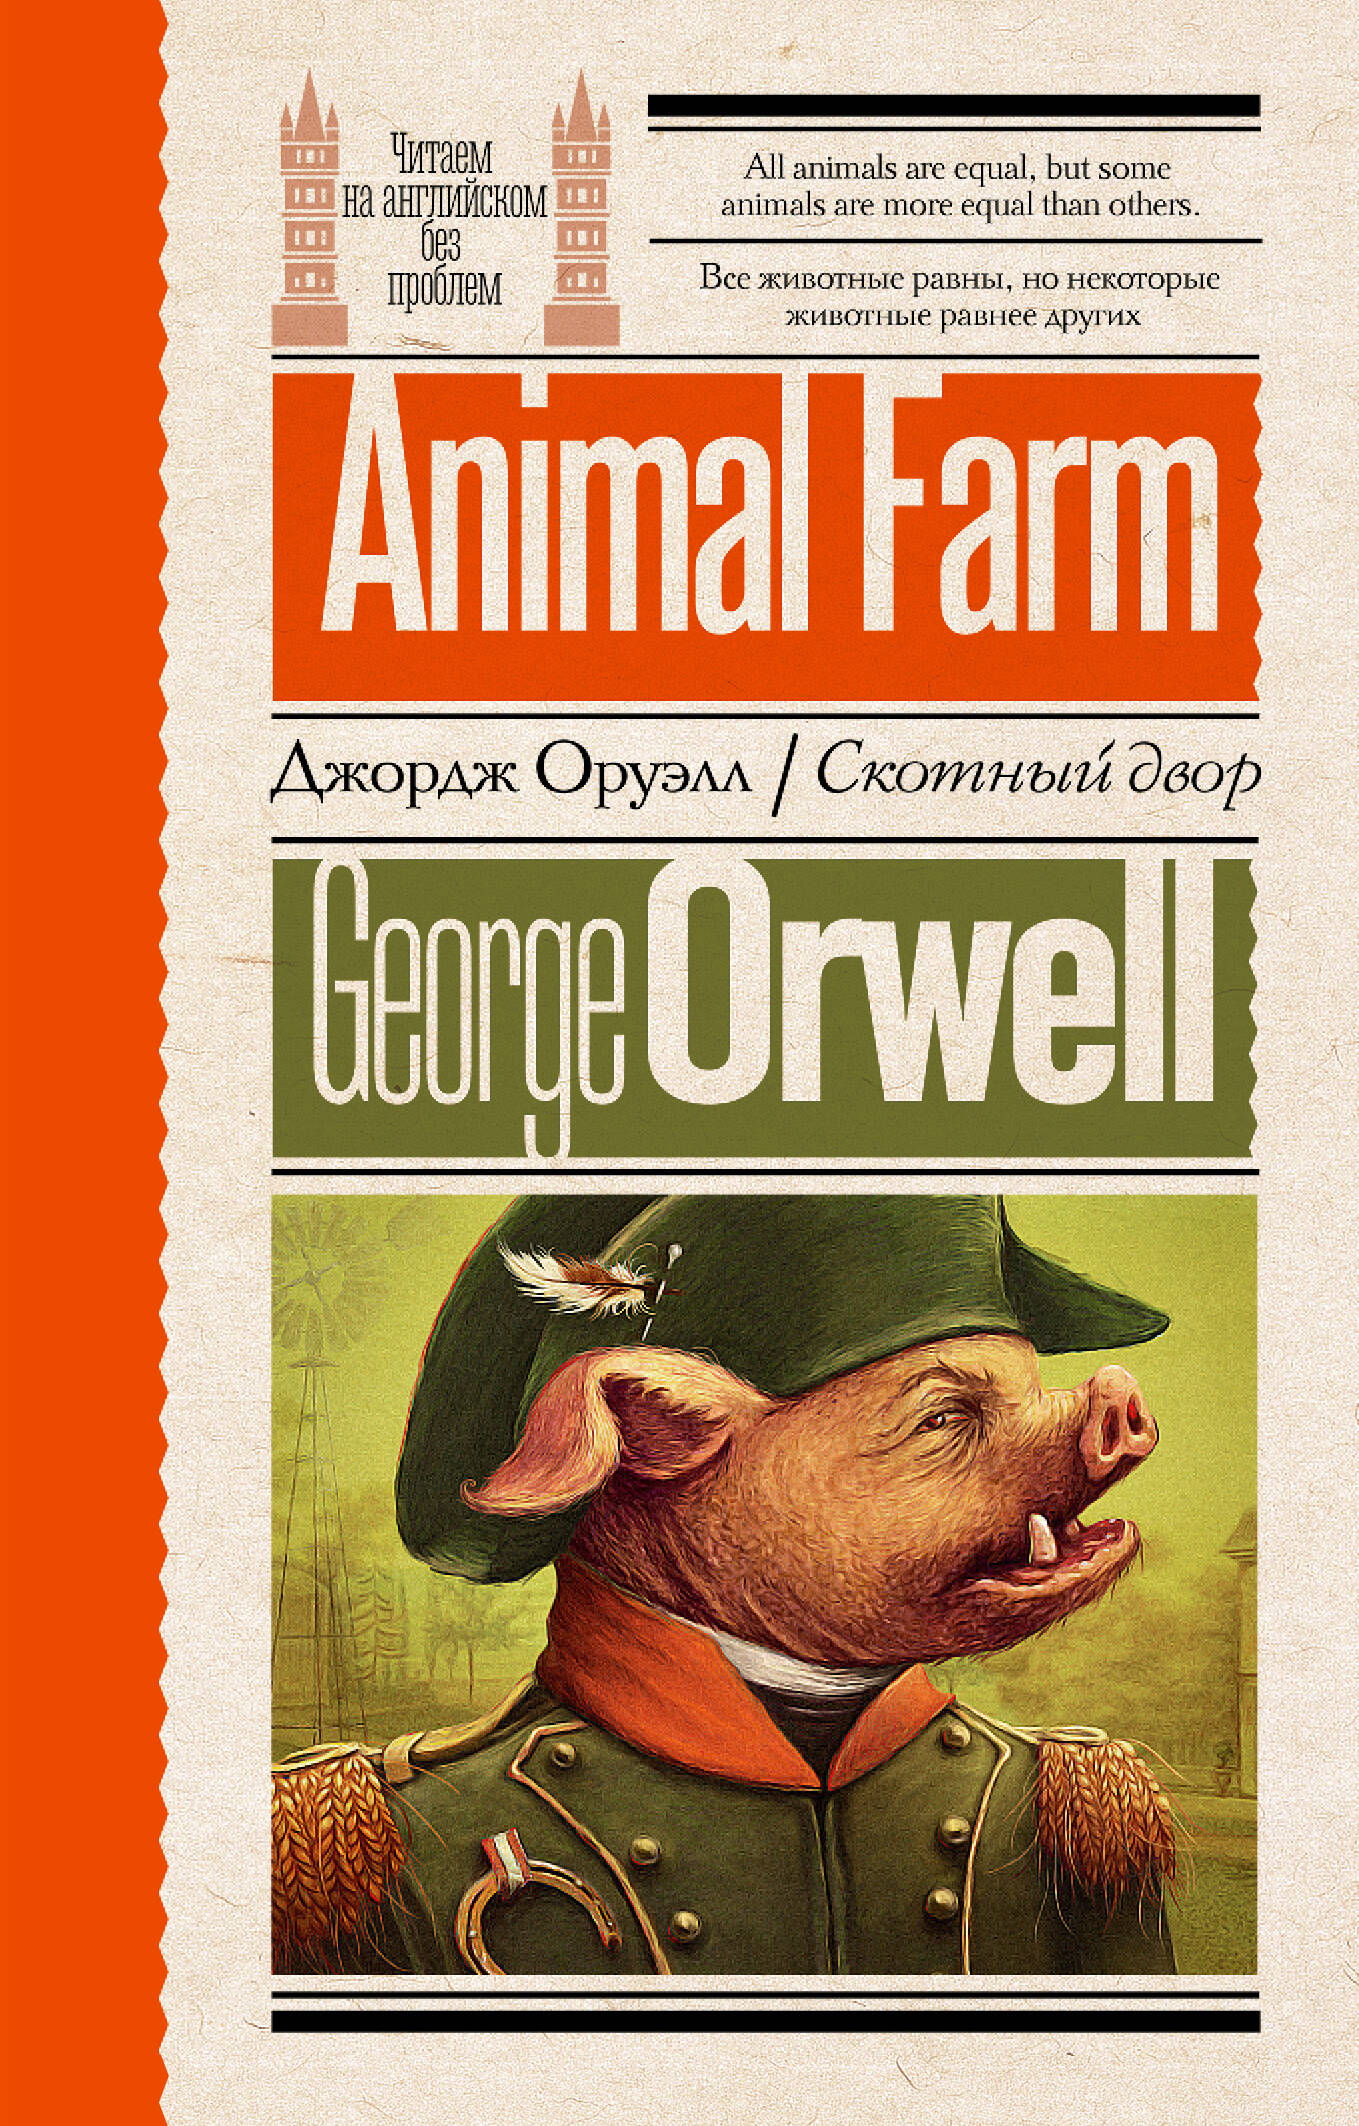 Оруэлл Джордж - Animal Farm / Скотный двор